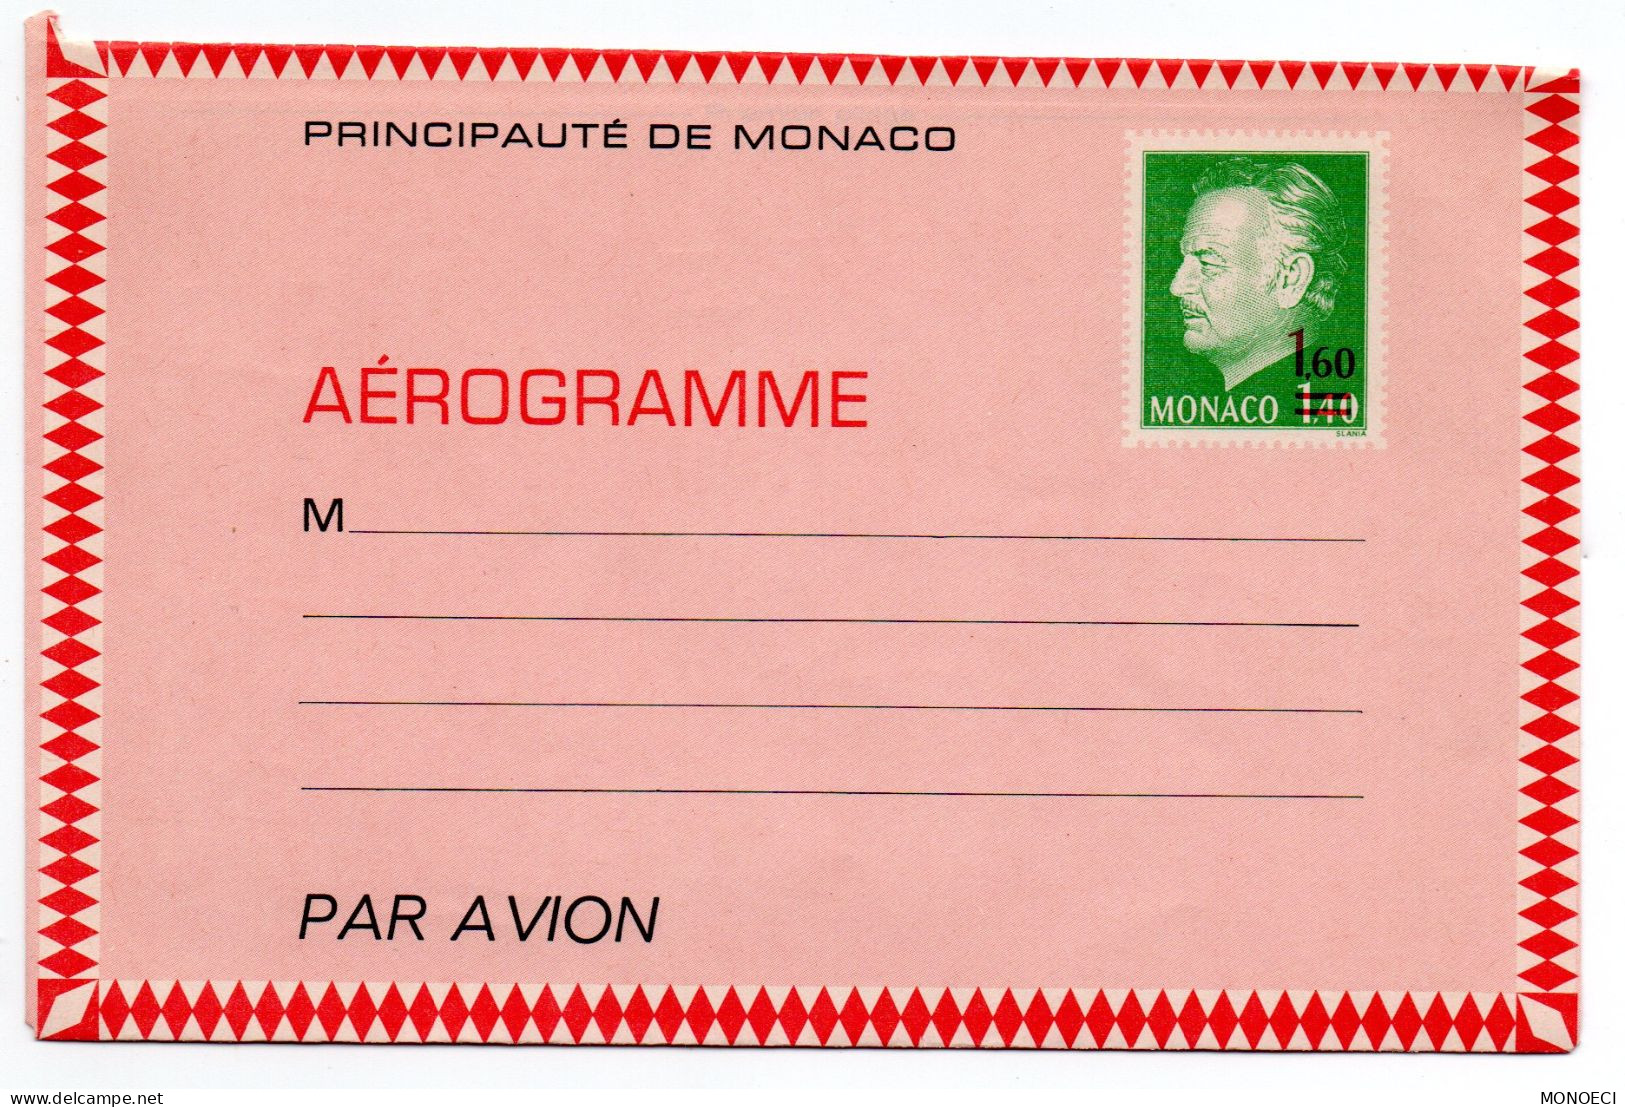 MONACO -- MONTE CARLO -- Monégasque -- Entier Postal -- Aérogramme -- Prince Rainier III 1F40 Surchargé 1F60 (1976) - Entiers Postaux